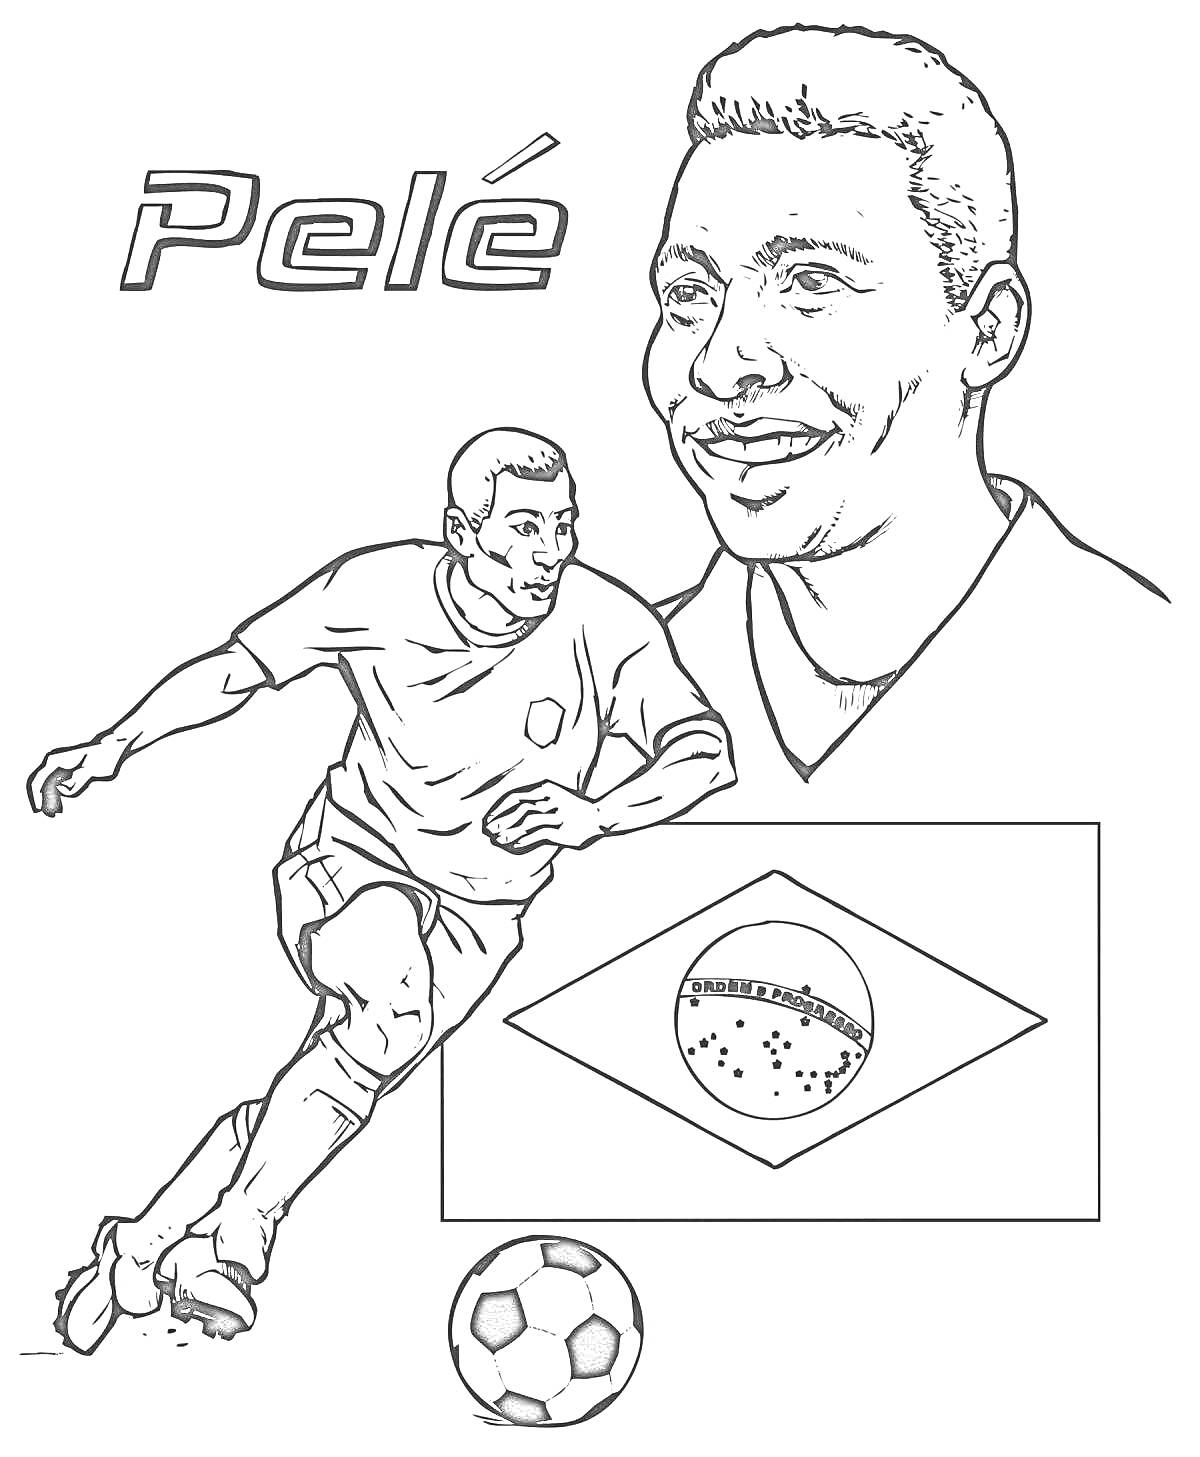 футболист, портрет футболиста, футбольный мяч, флаг Бразилии, имя Pele